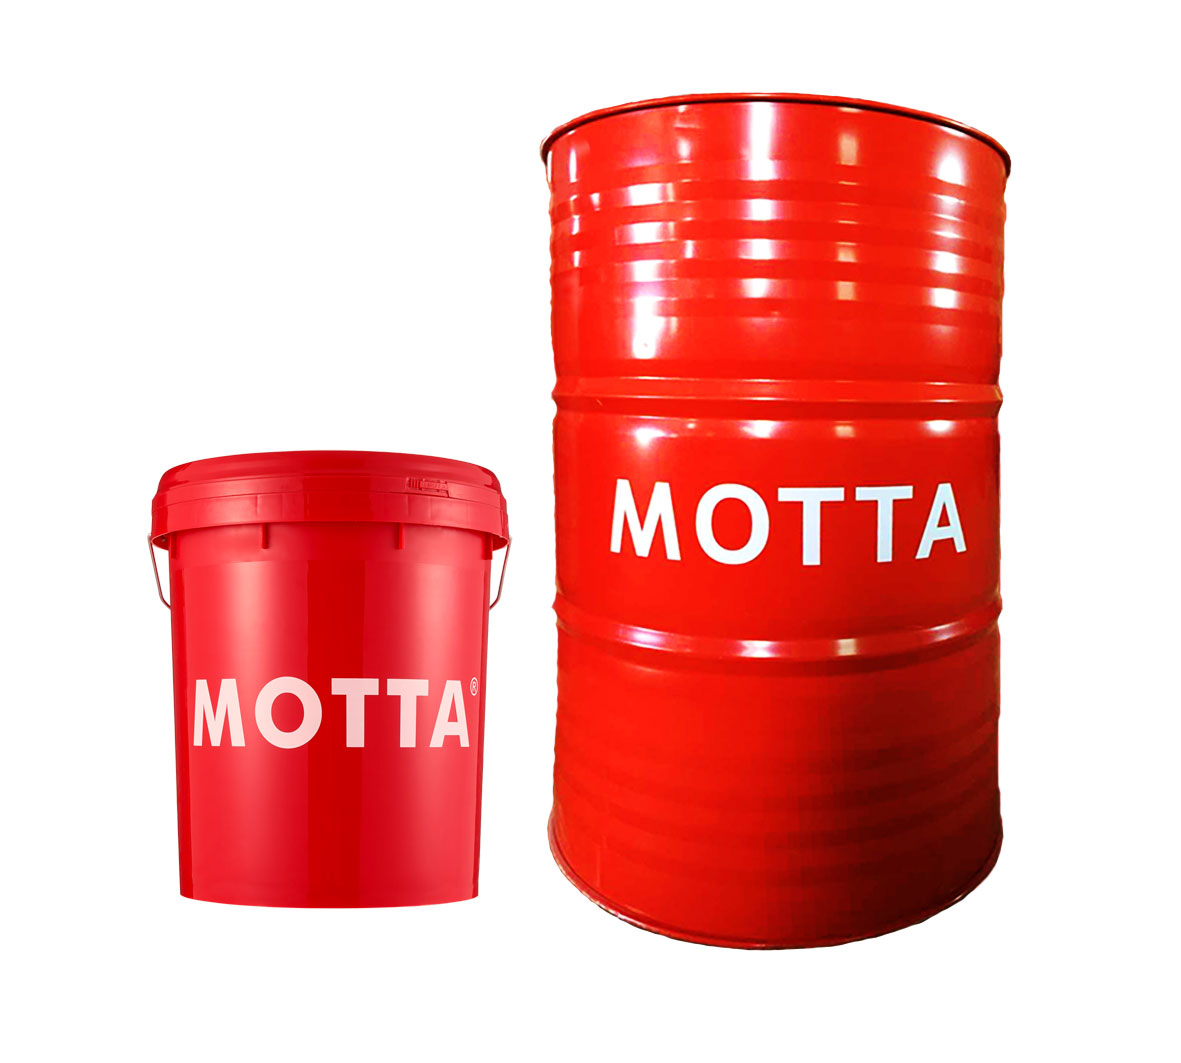 攀枝花品牌润滑油招商 进口润滑油MOTTA诚招代理